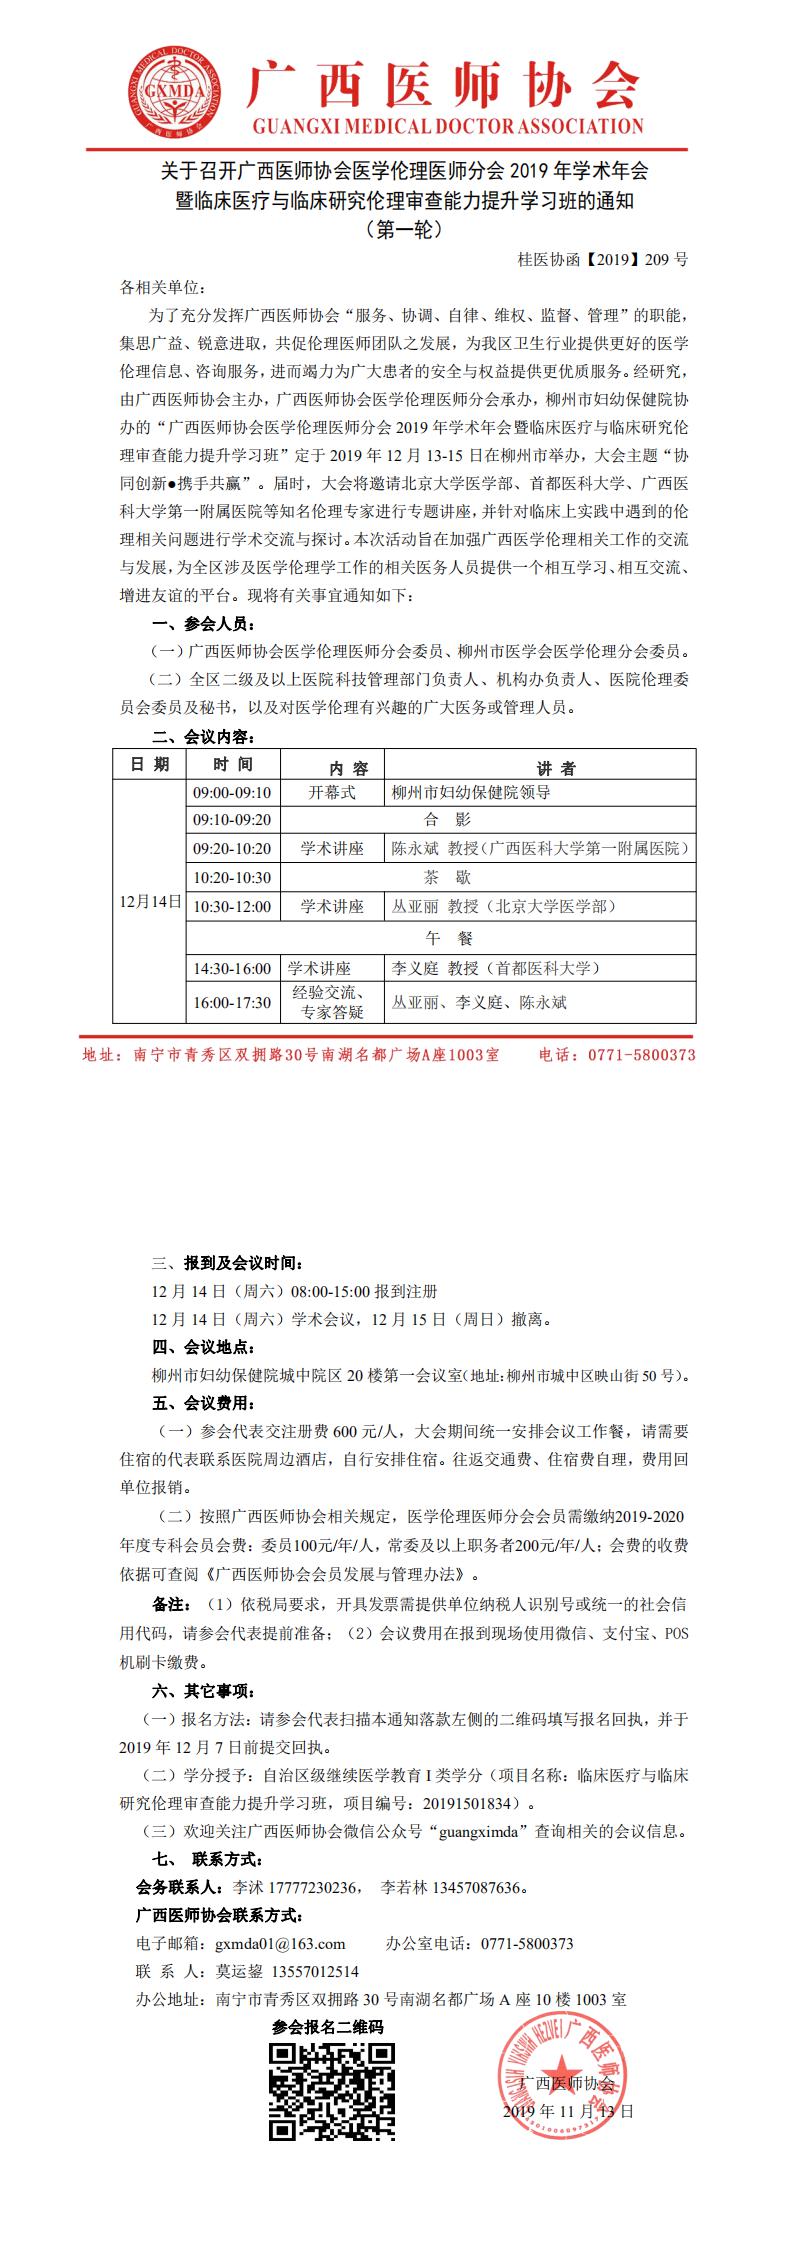 【2019】209号 广西医师协会医学伦理医师分会2019年学术年会通知_0.jpg